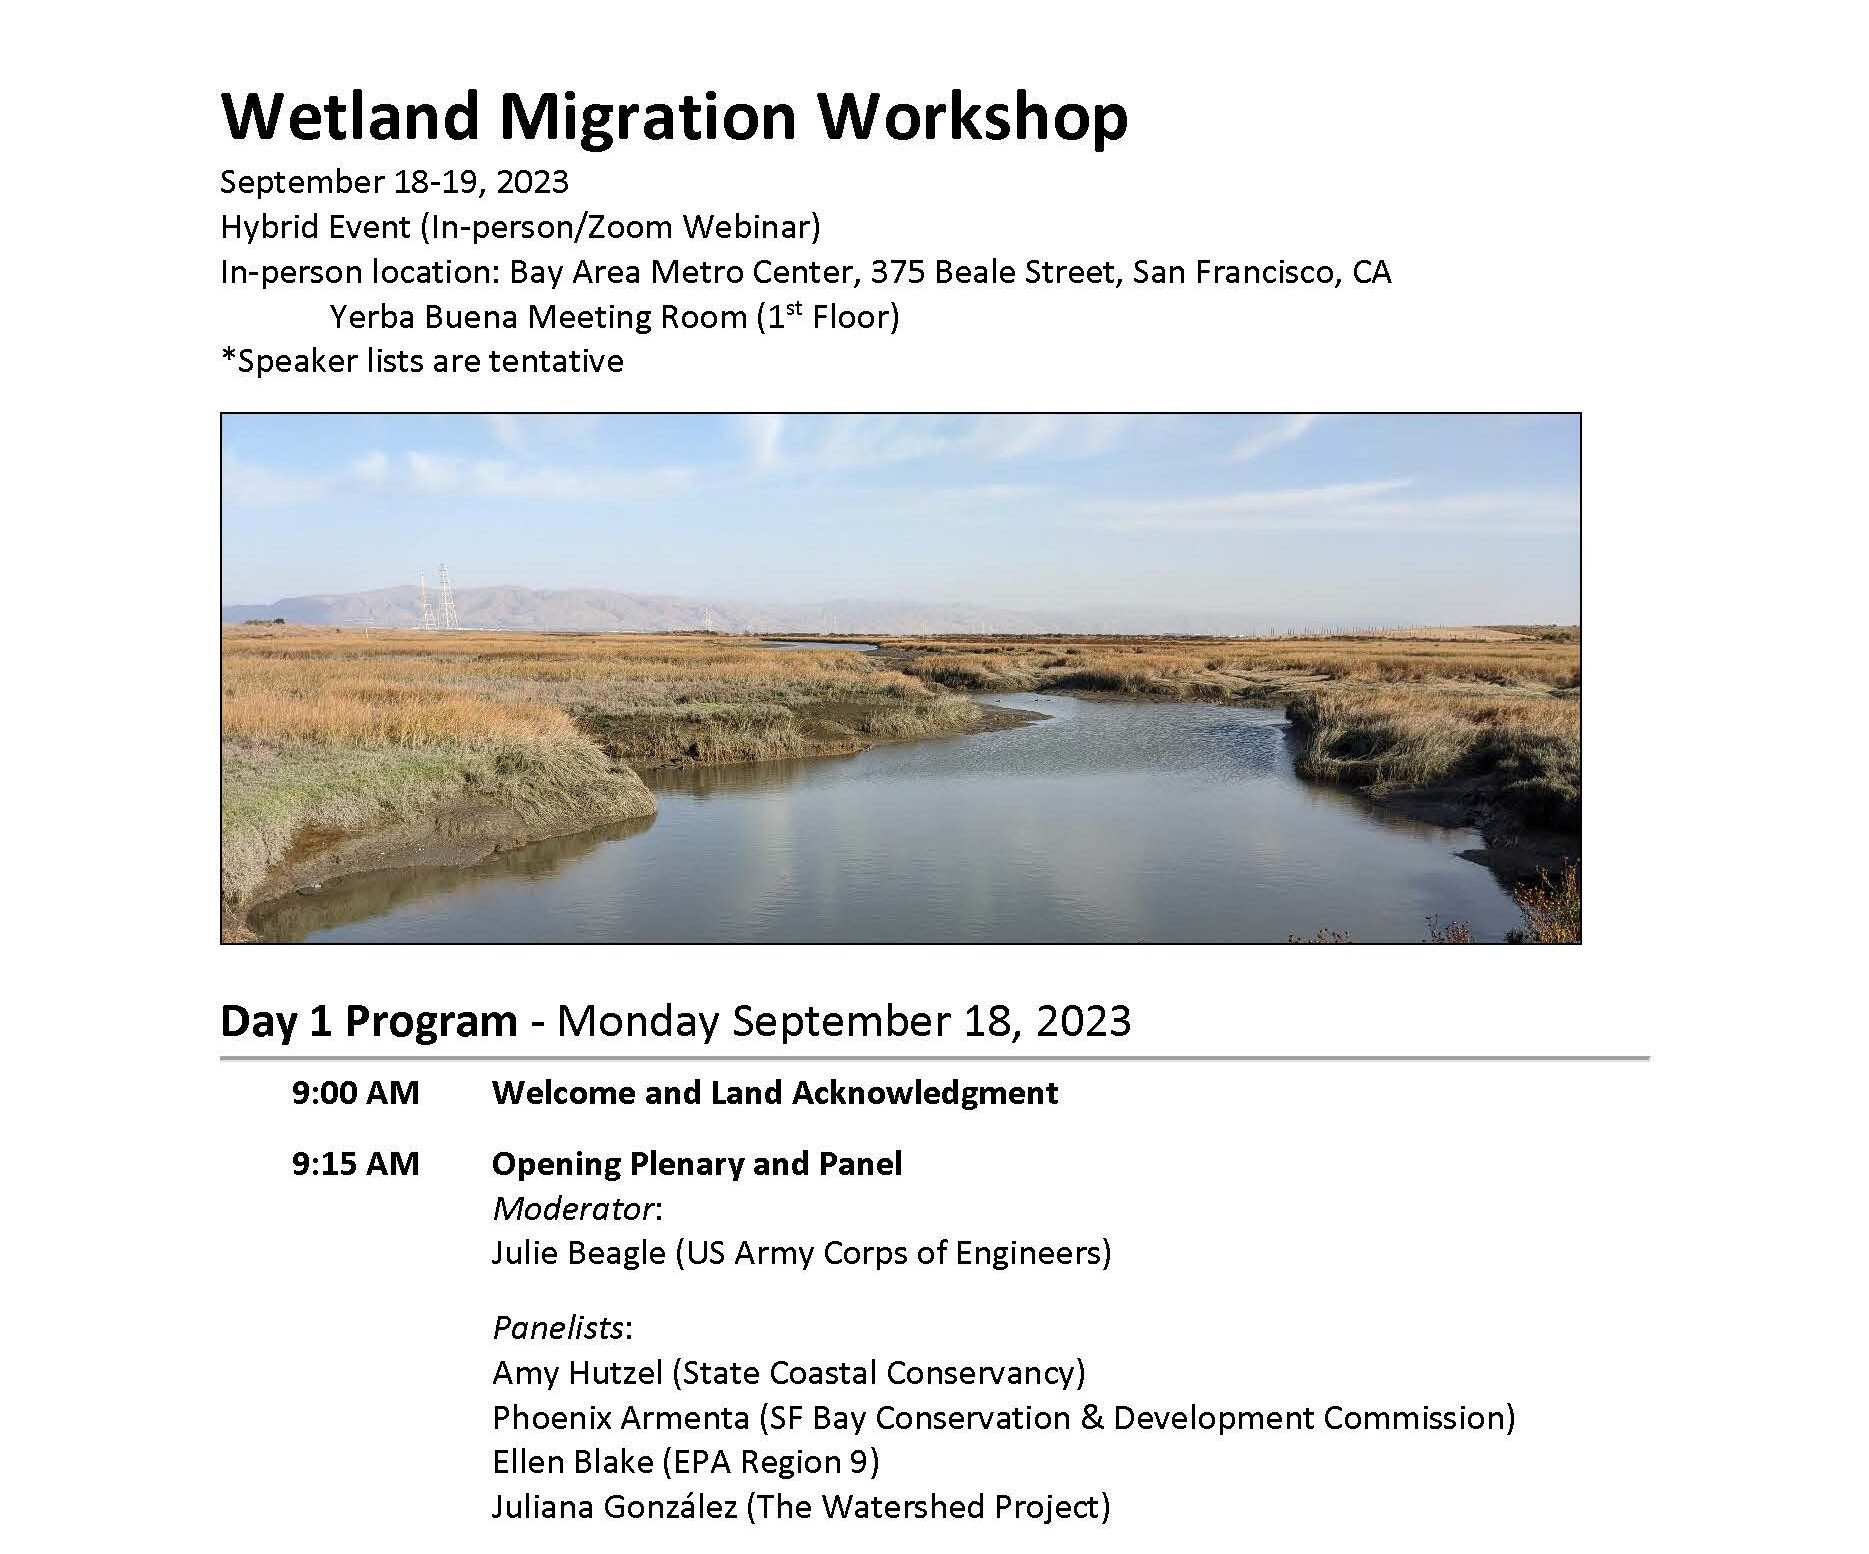 Wetland Migration Workshop Program